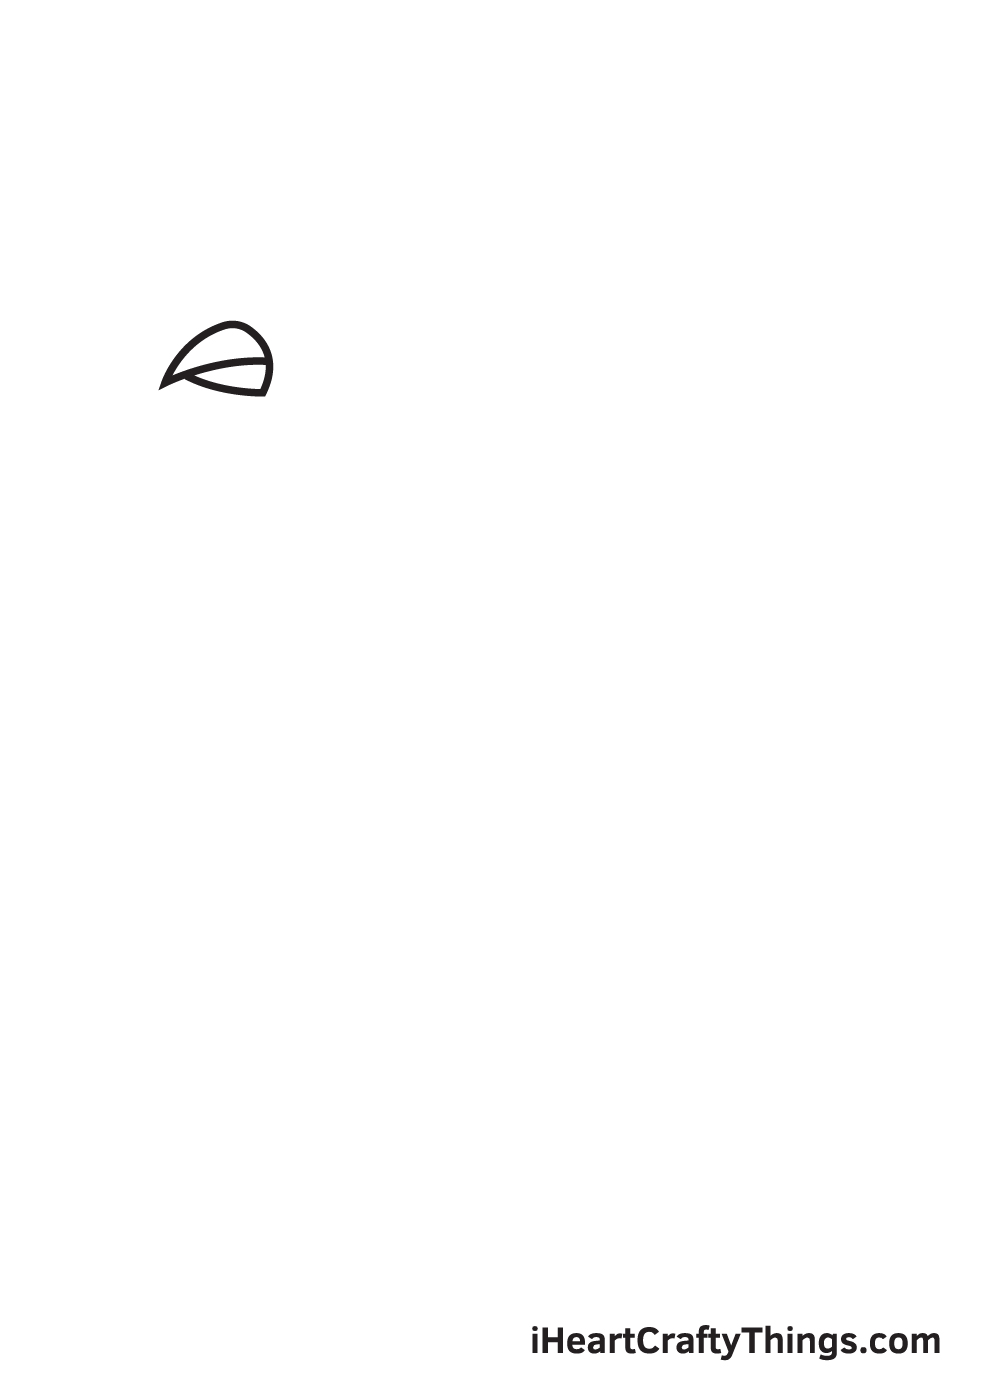 VẼ CON HEO - BƯỚC 1 - Hướng dẫn cách vẽ chim bồ câu đơn giản với 9 bước cơ bản